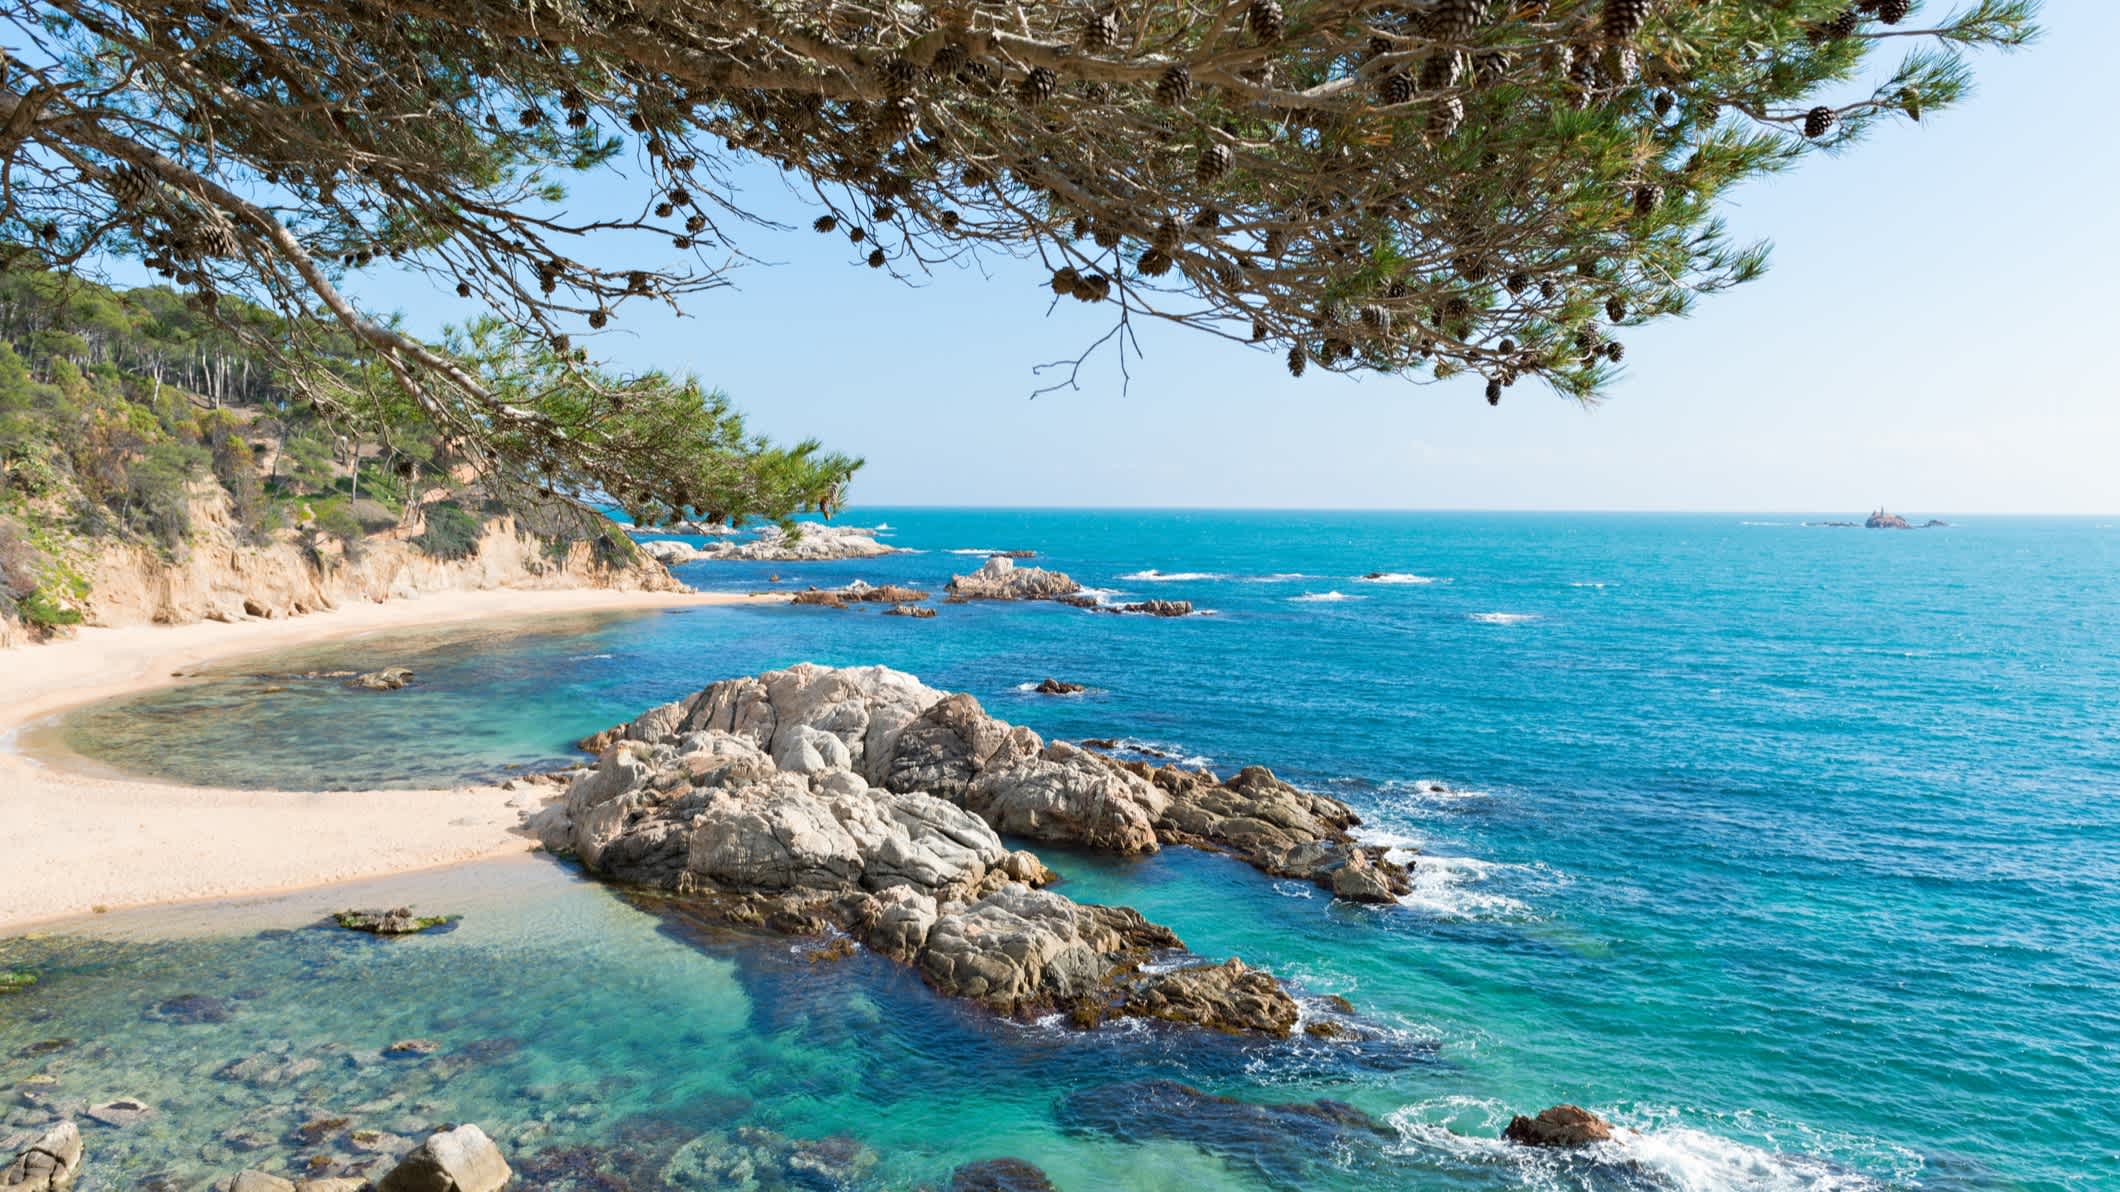 Rocher dans l'eau turquoise au bord du sable blanc entouré de falaise sur la plage de Sant Pere Pescador en Espagne. 